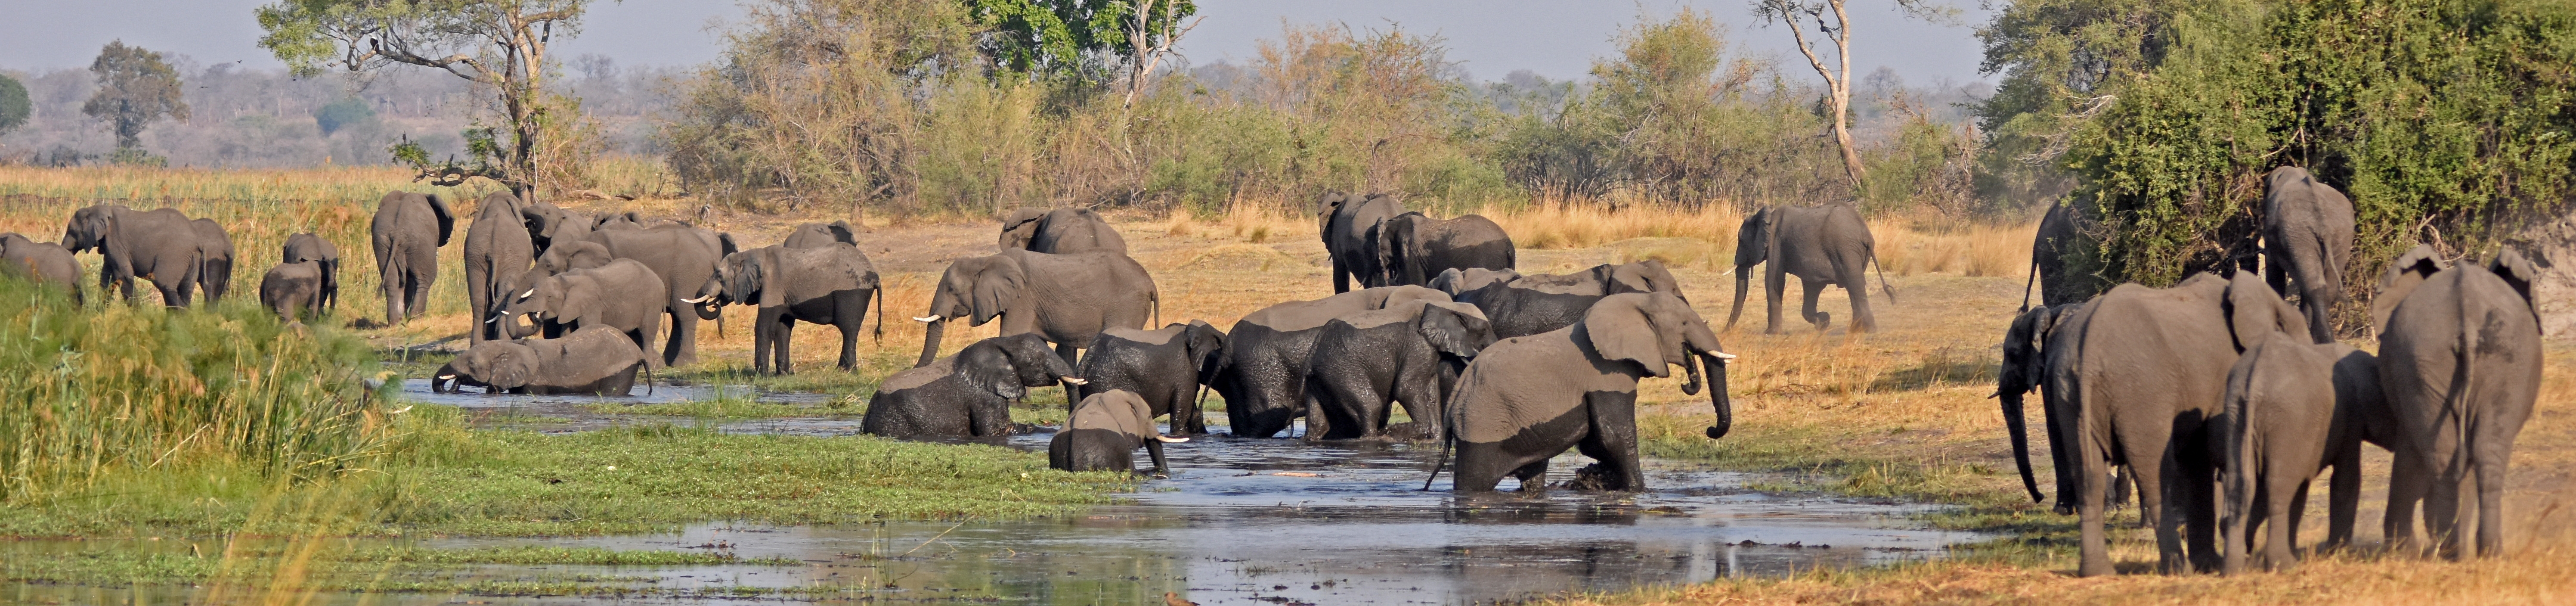 Elephants in Mudumu | Nature Travel Namibia